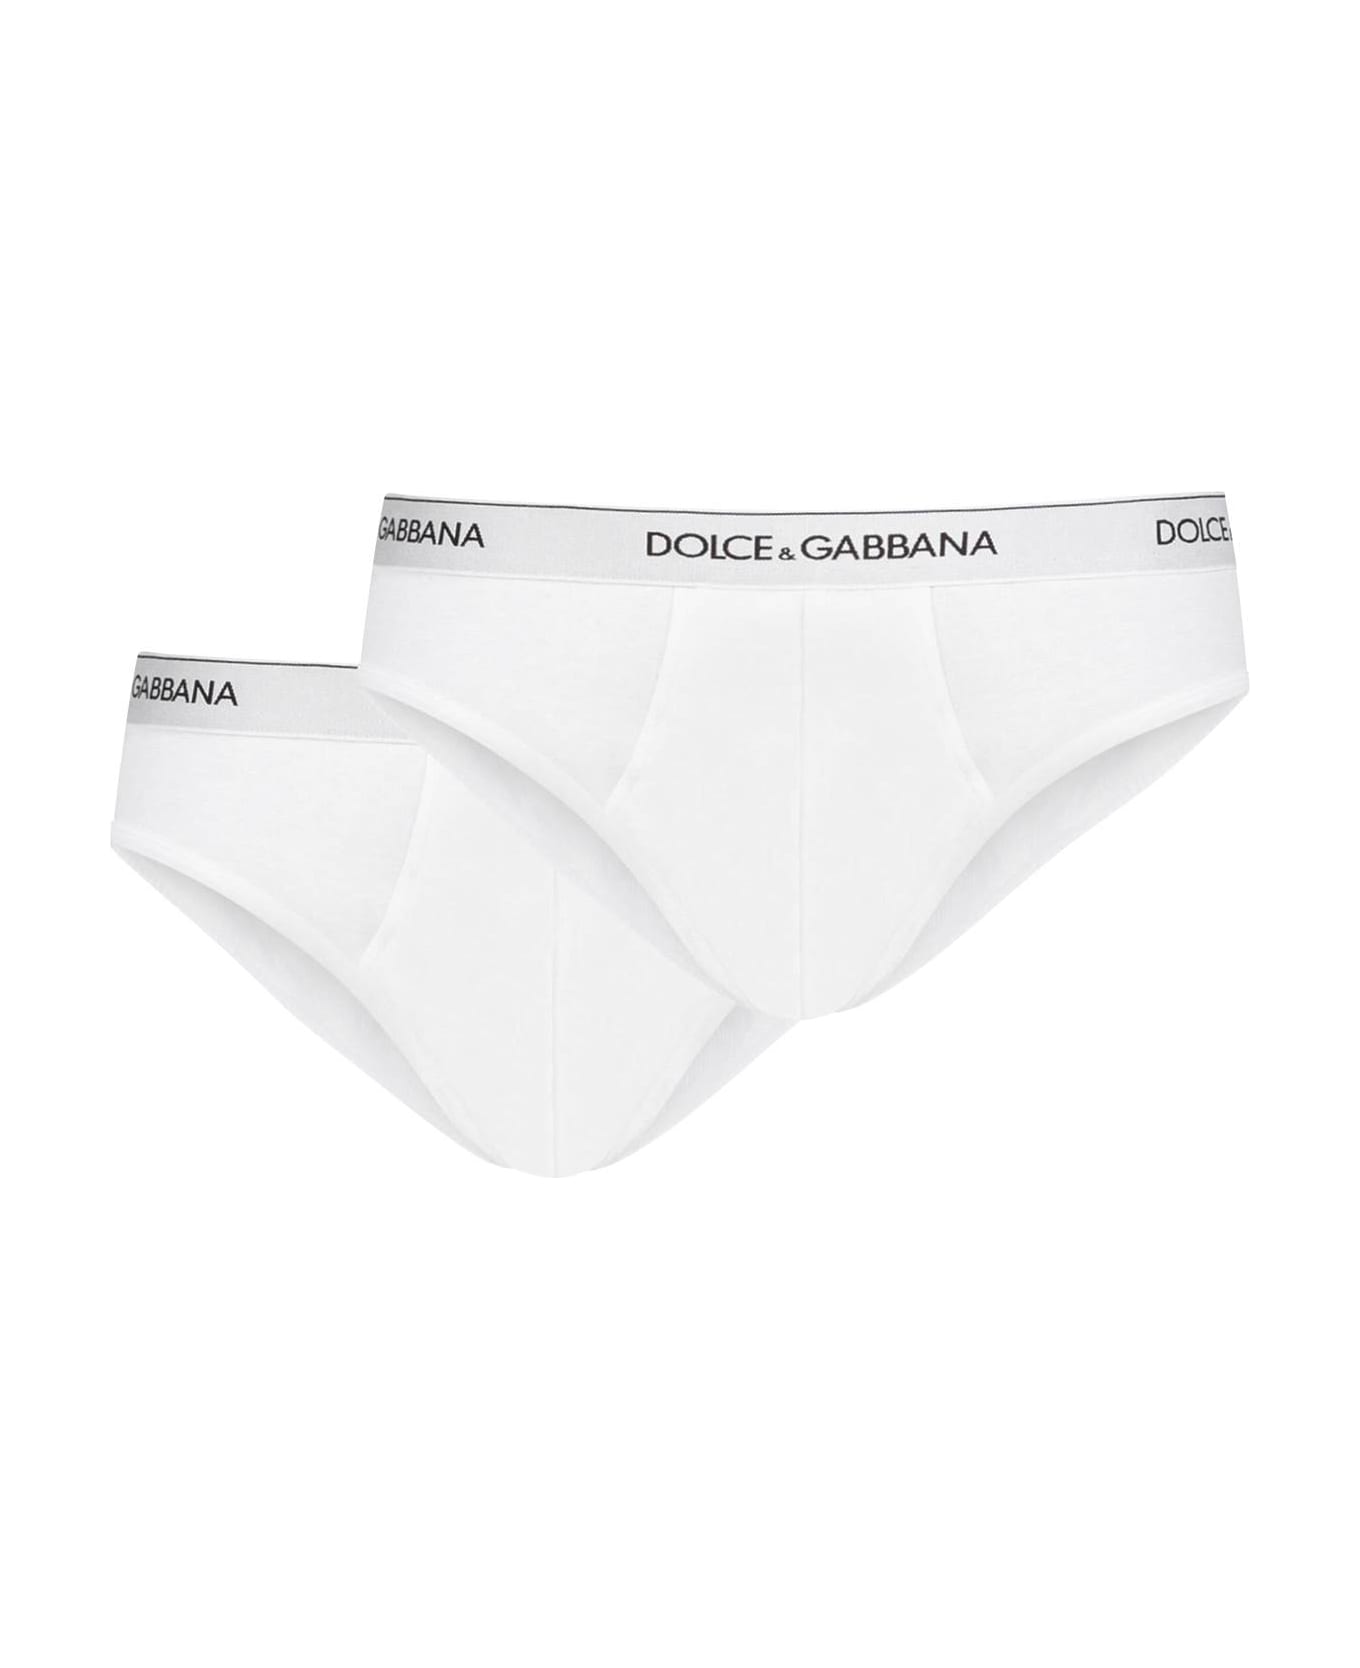 Dolce & Gabbana White Cotton Briefs - White ショーツ